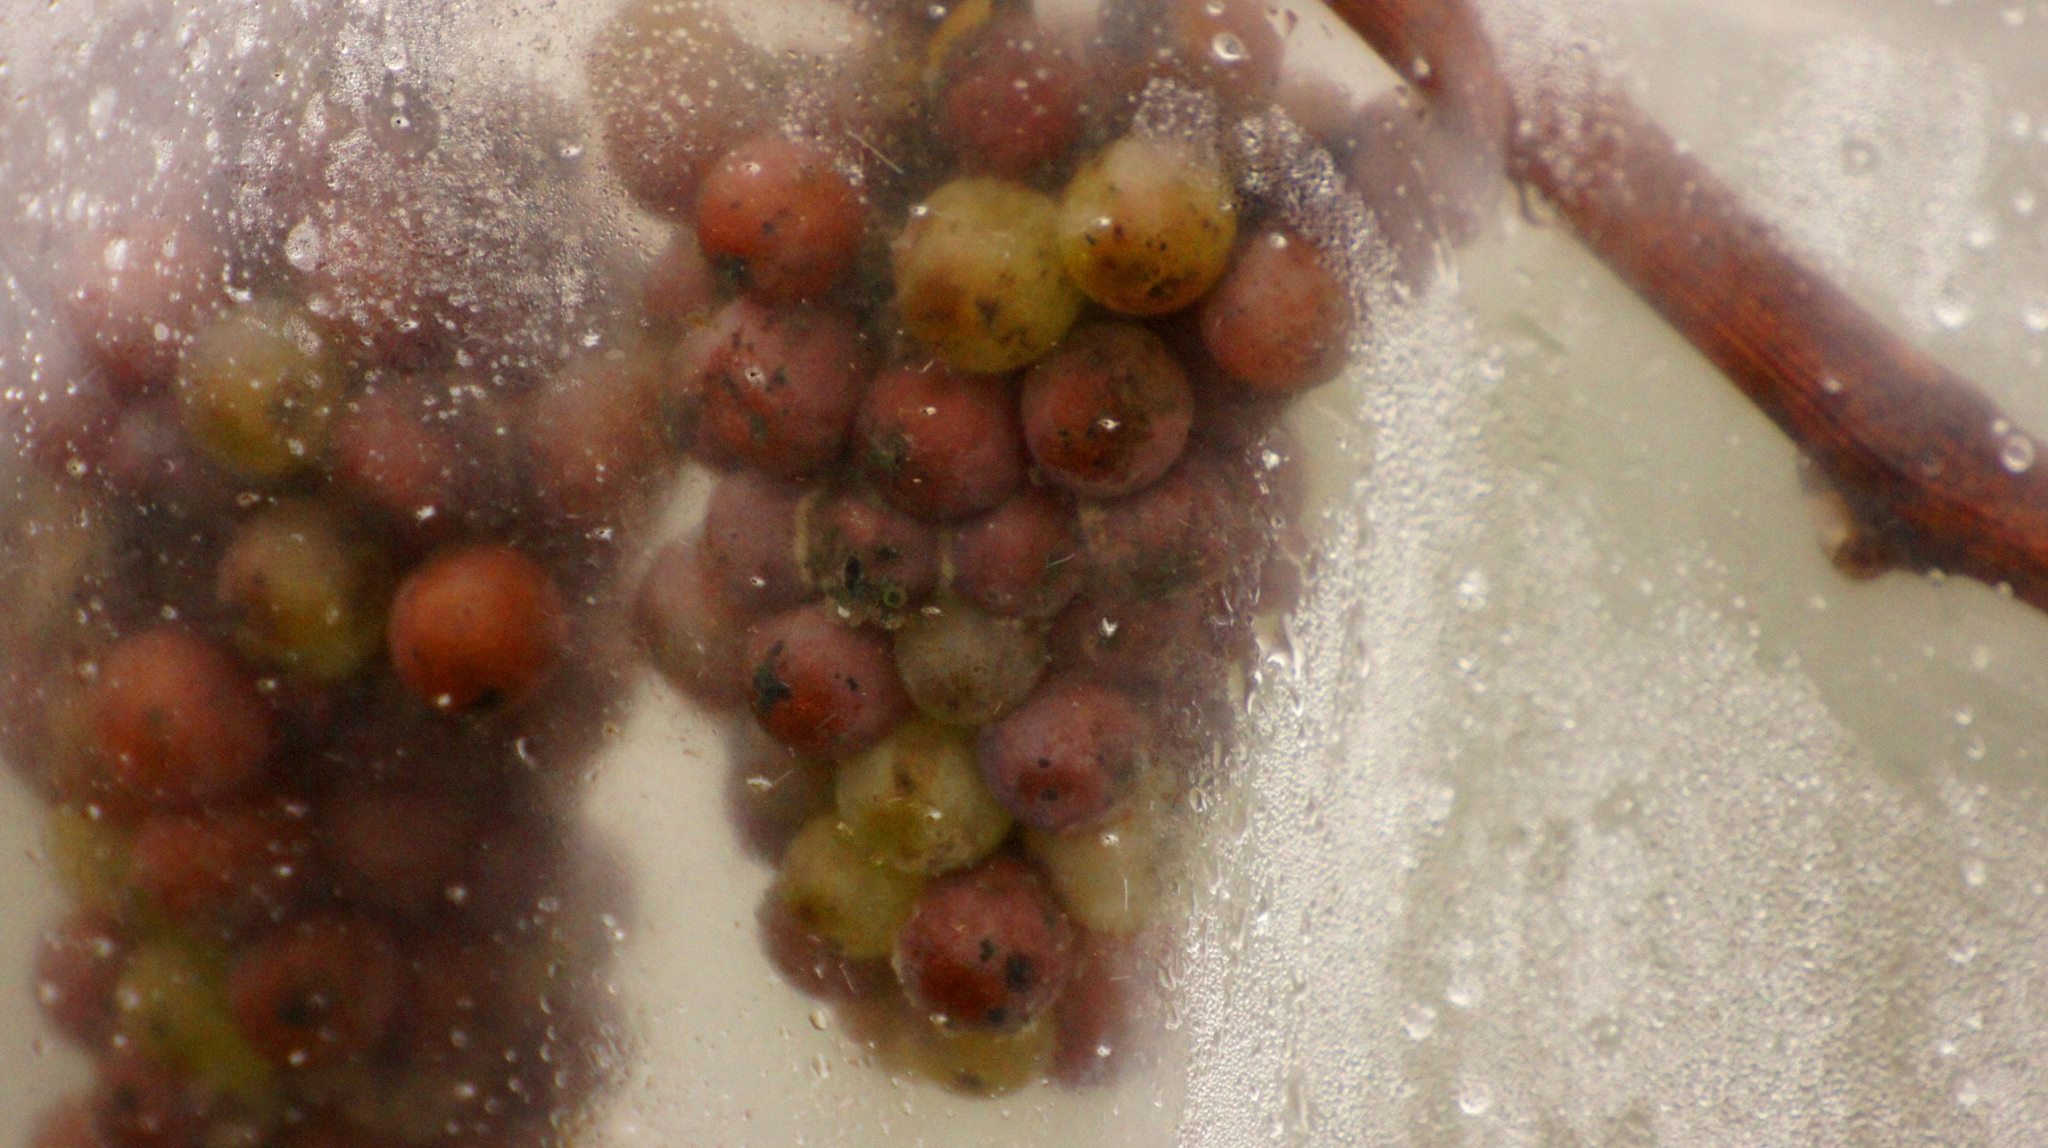 Winnica Turnau - zbiory na wino lodowe